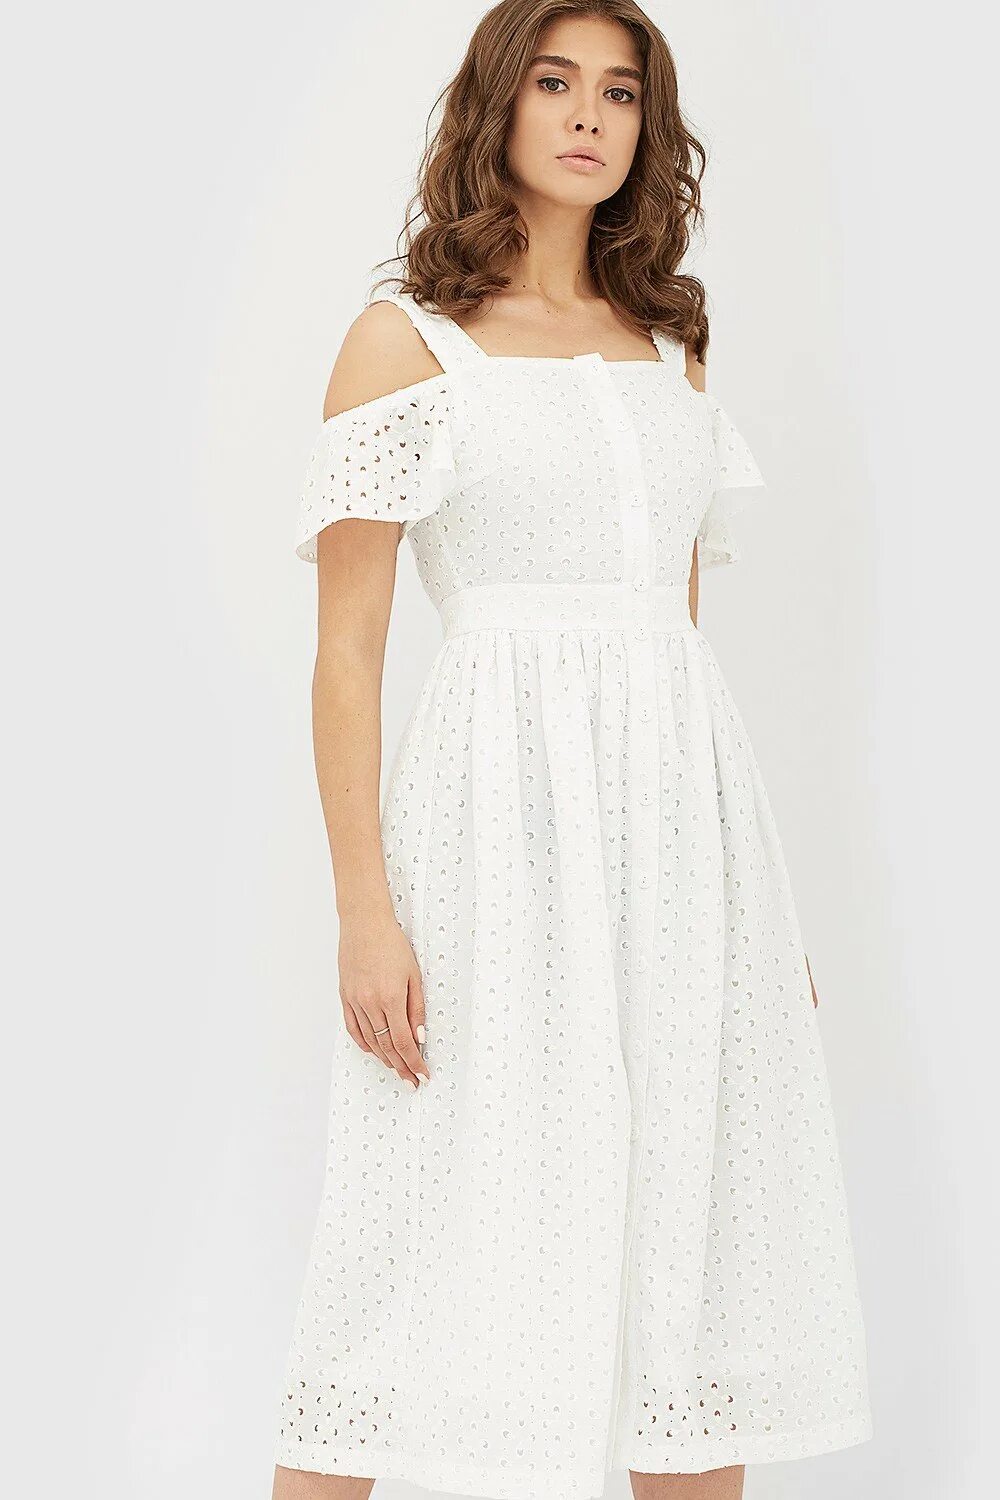 Белое платье из хлопка. Платье шитье хлопок белое. Белое платье хлопок. Платье из хлопка. Платье из шитья белое.